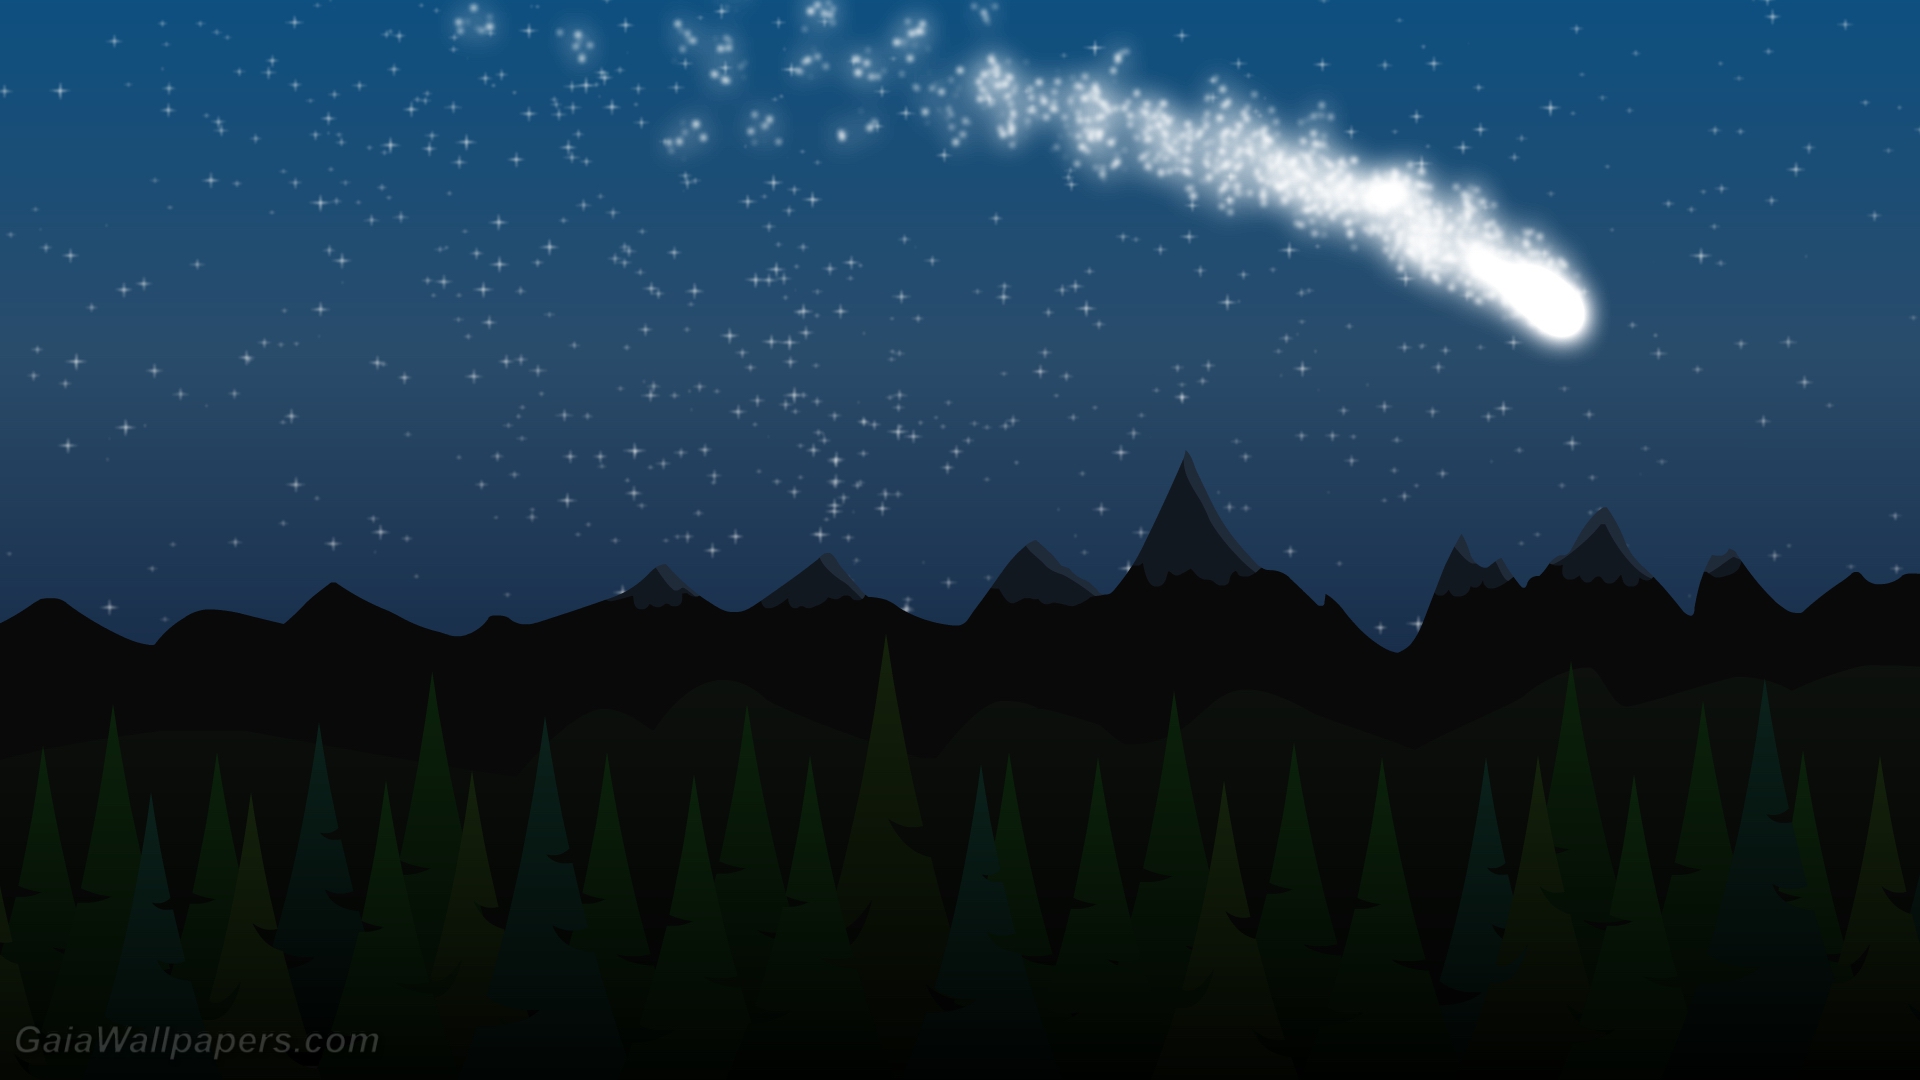 Comète dans le ciel étoilé - Fonds d'écran gratuits